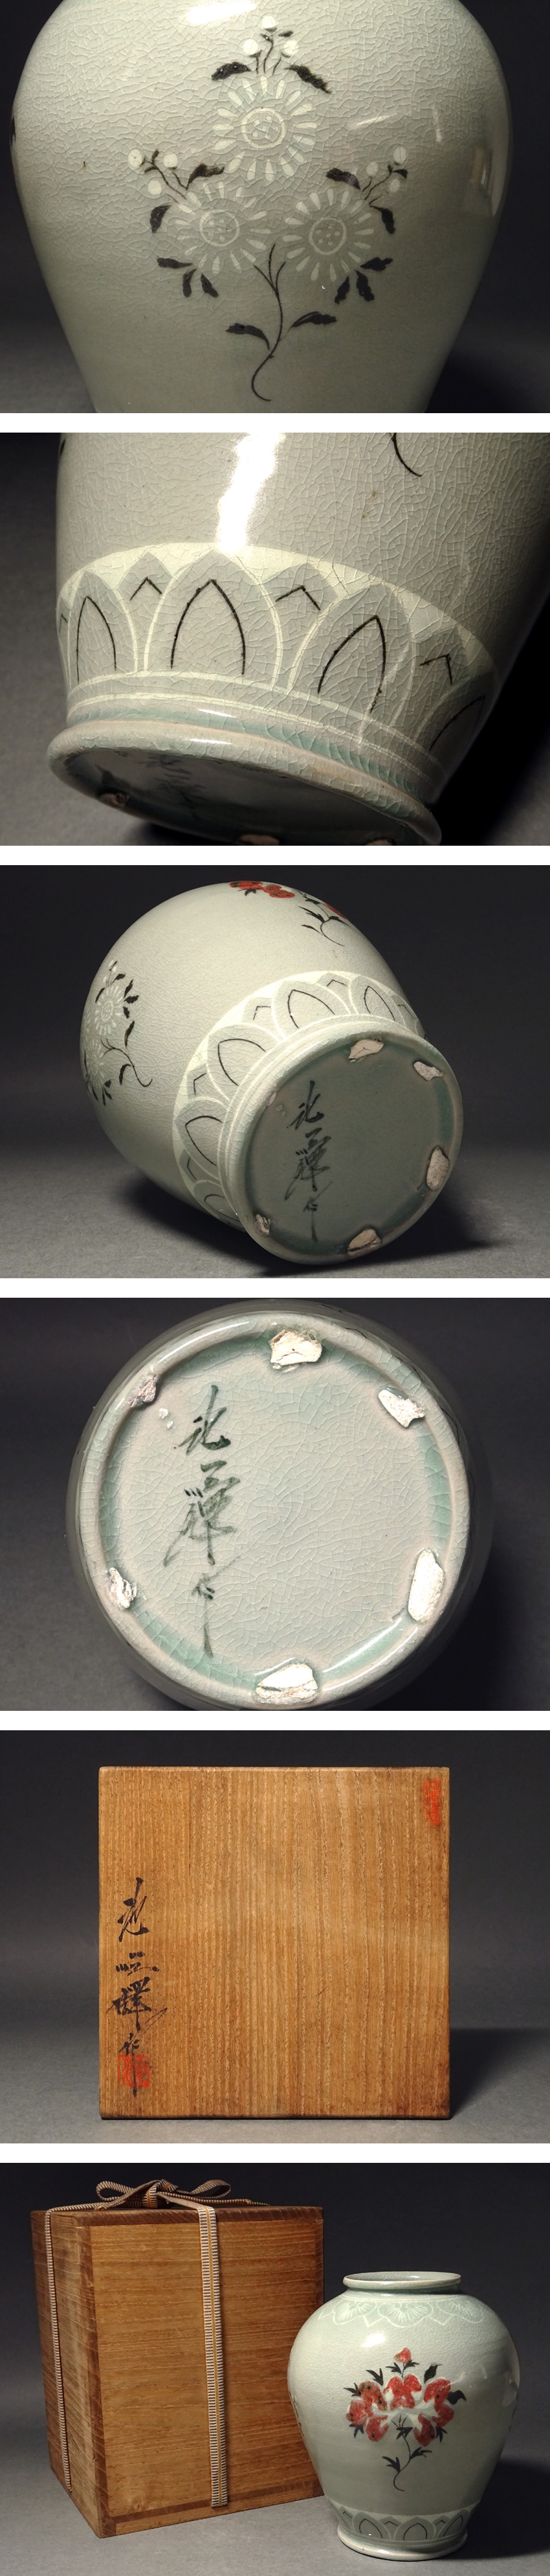 高麗青磁 象嵌柳紋合子 香合 蓋物 現代美術品 李朝 - 陶芸